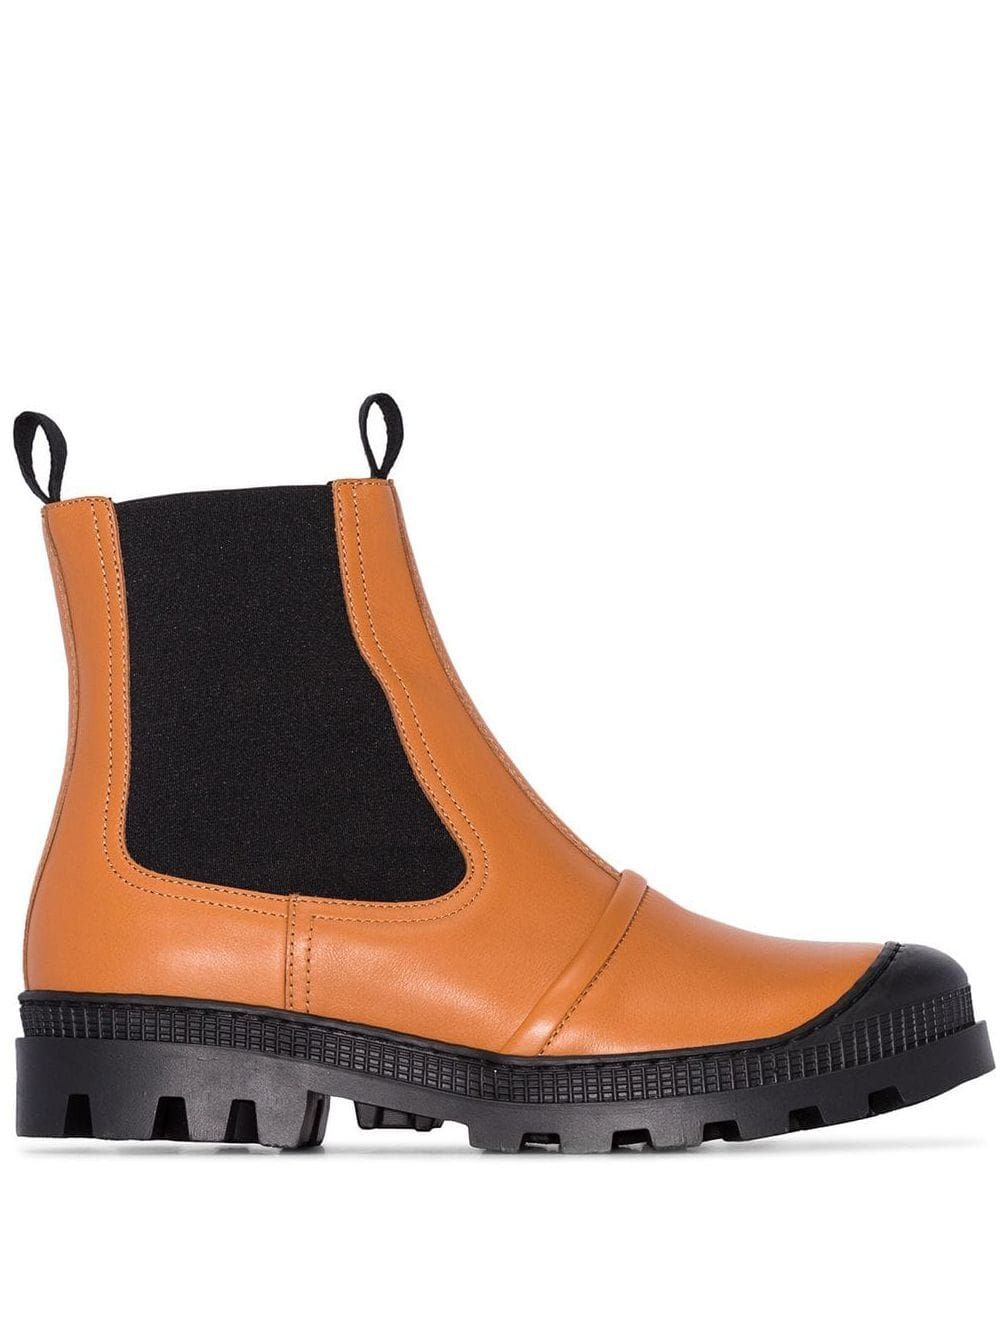 women's winter boot trends 218